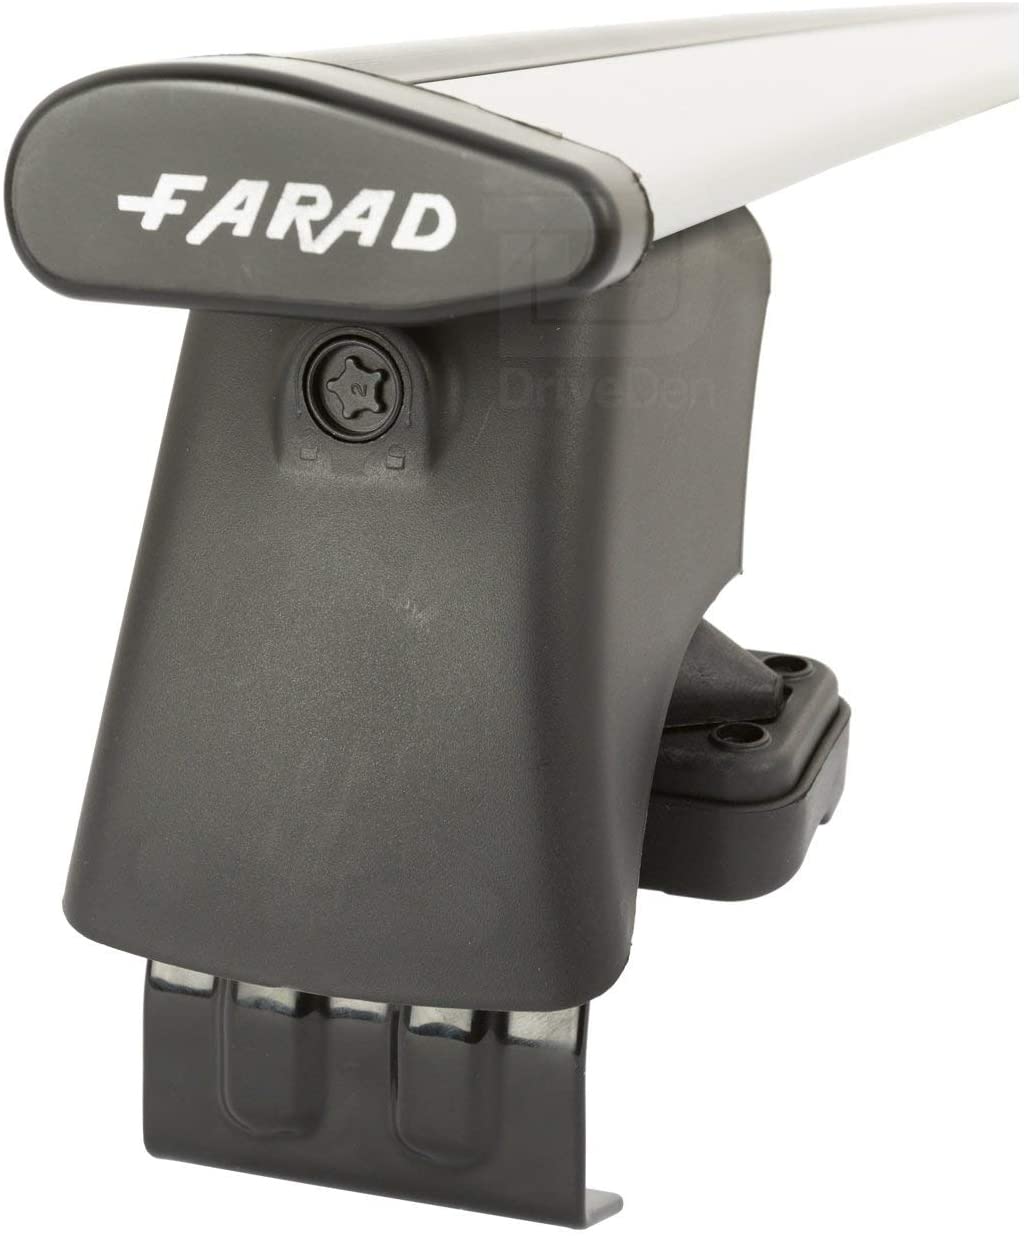 FARAD-Kit H2 per barre portatutto - Honda Insight 2009-2014 (senza corrimano)